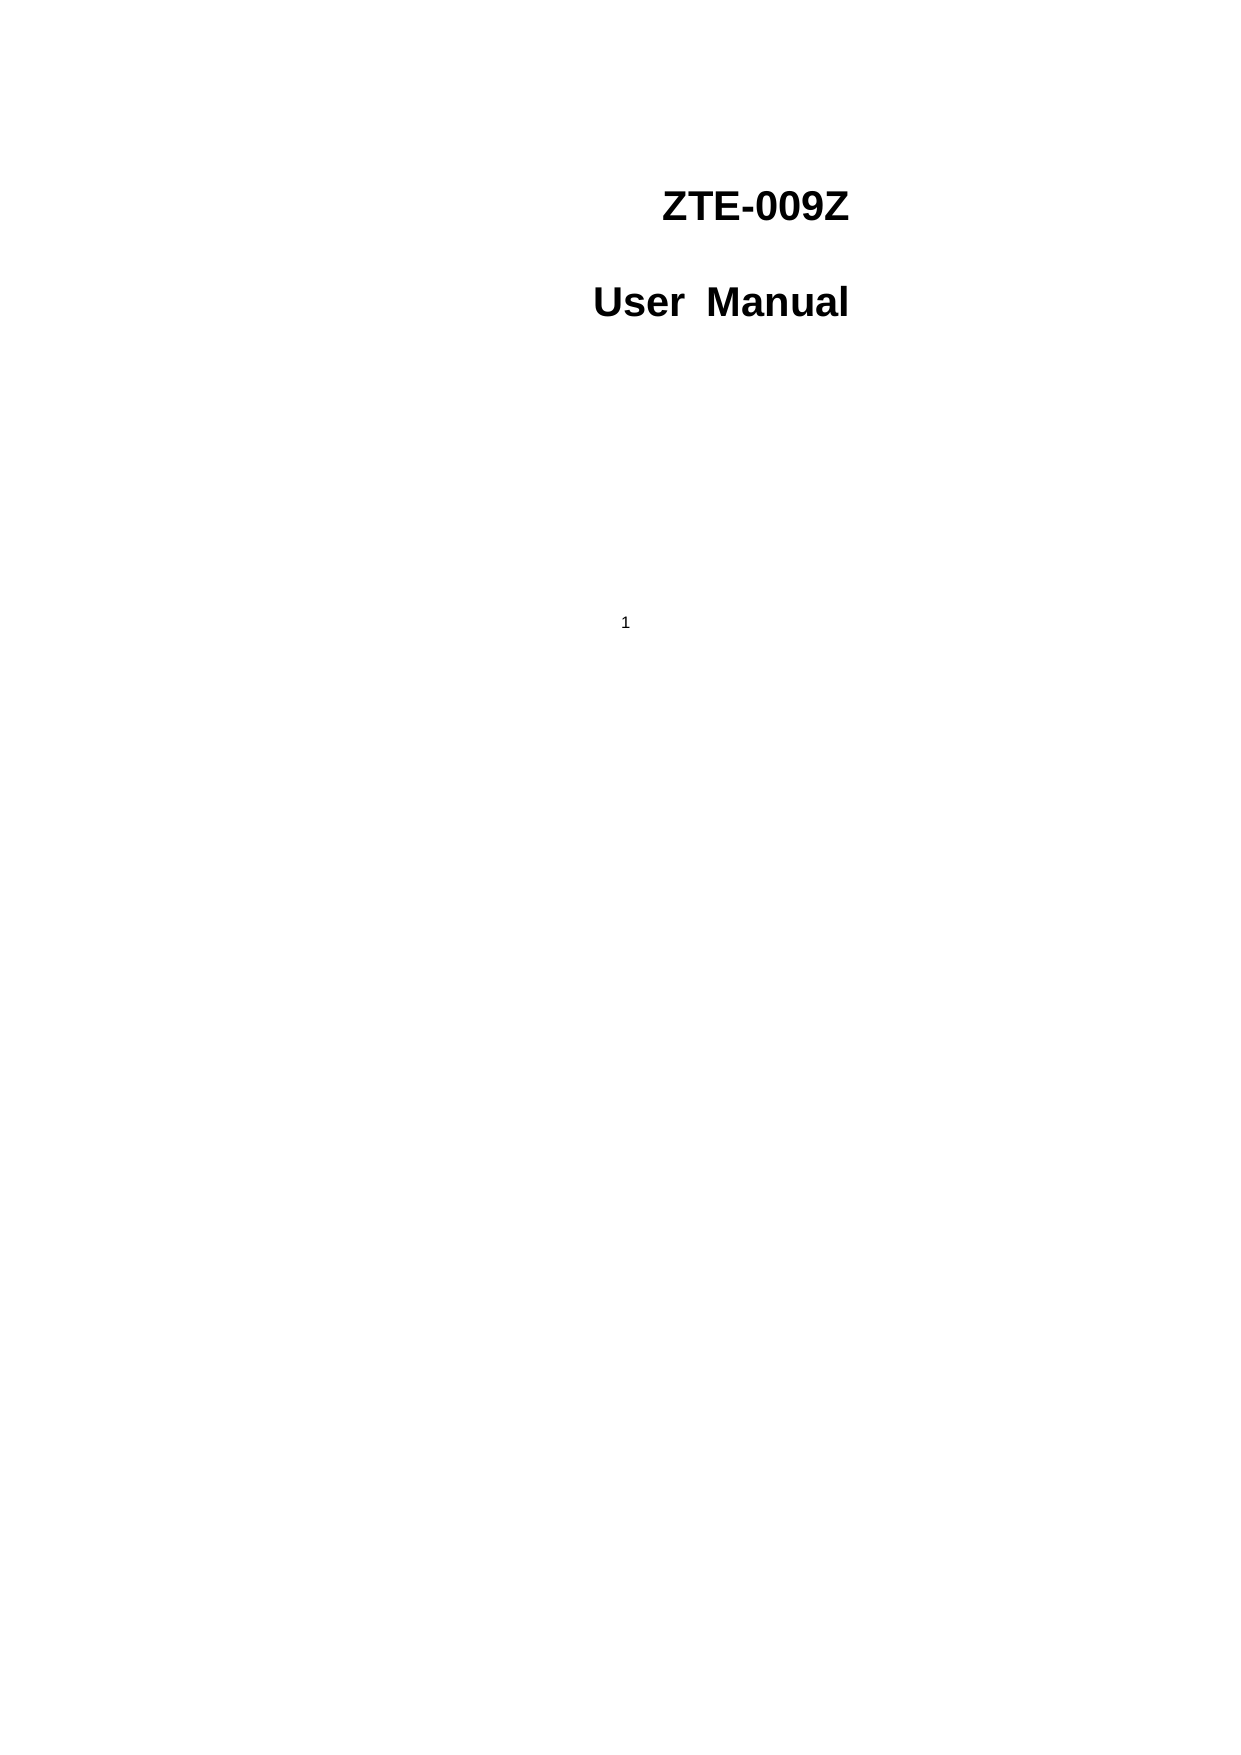 1    ZTE-009Z  User Manual  